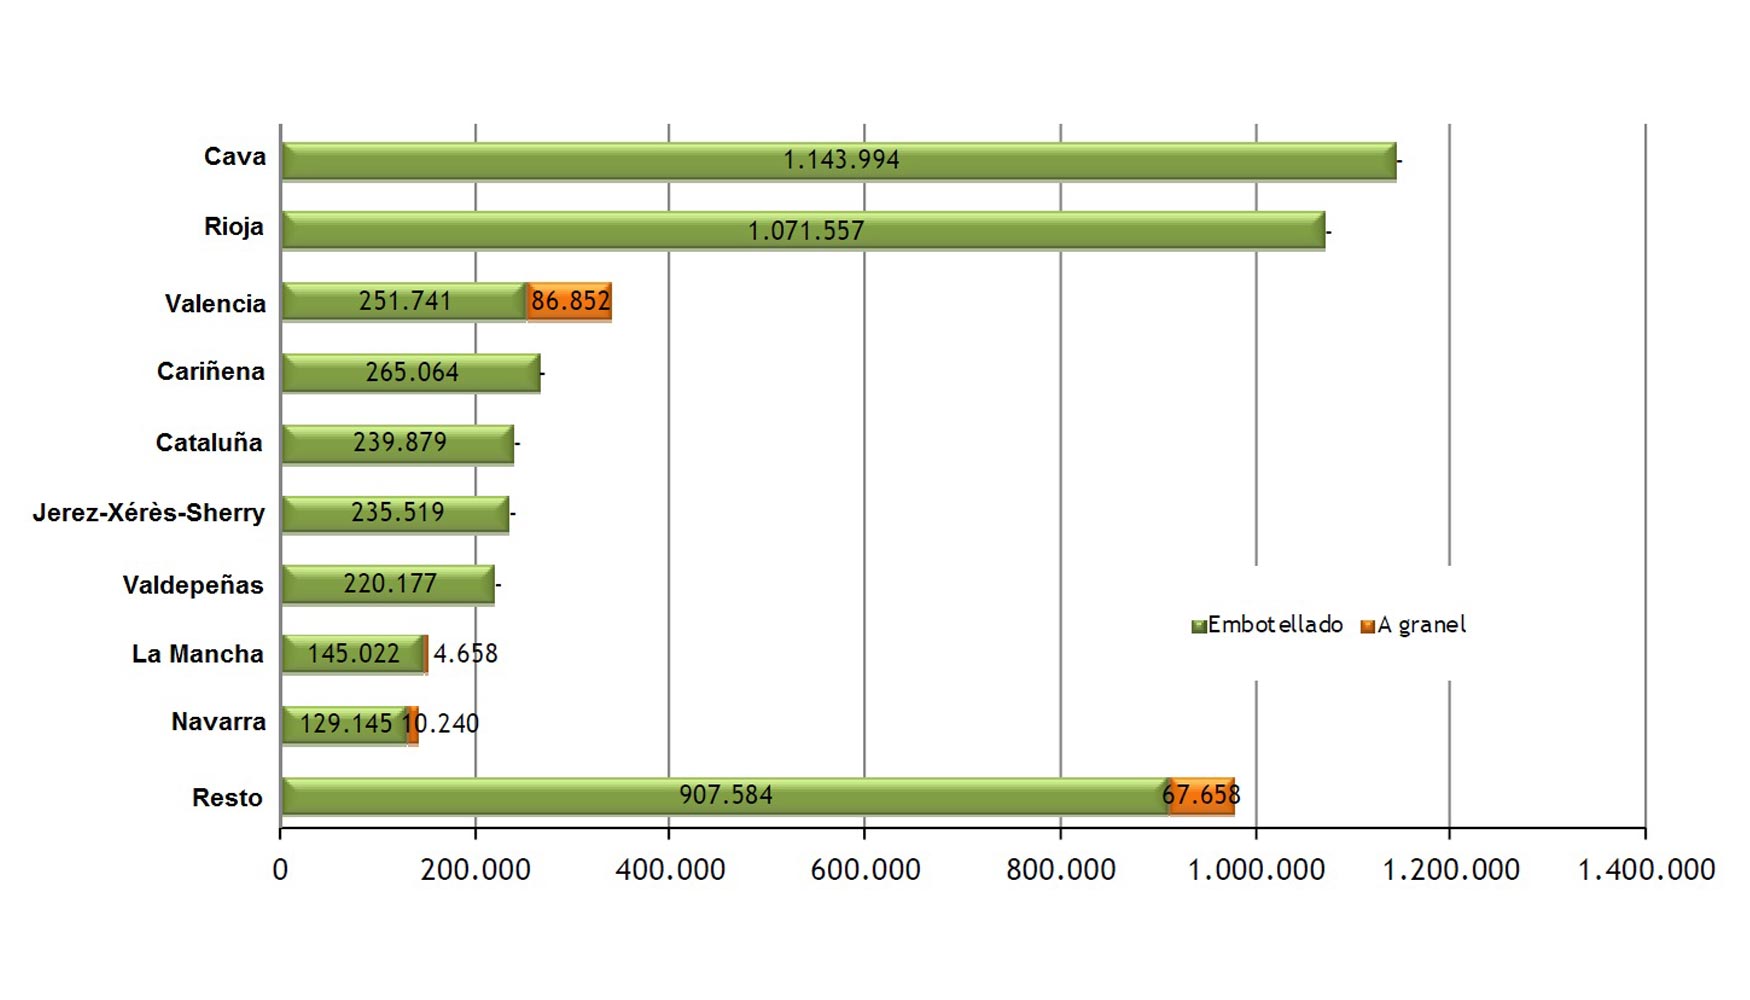 Comercializacin exterior total por DOP y tipos de envase (4.779.090 hl)